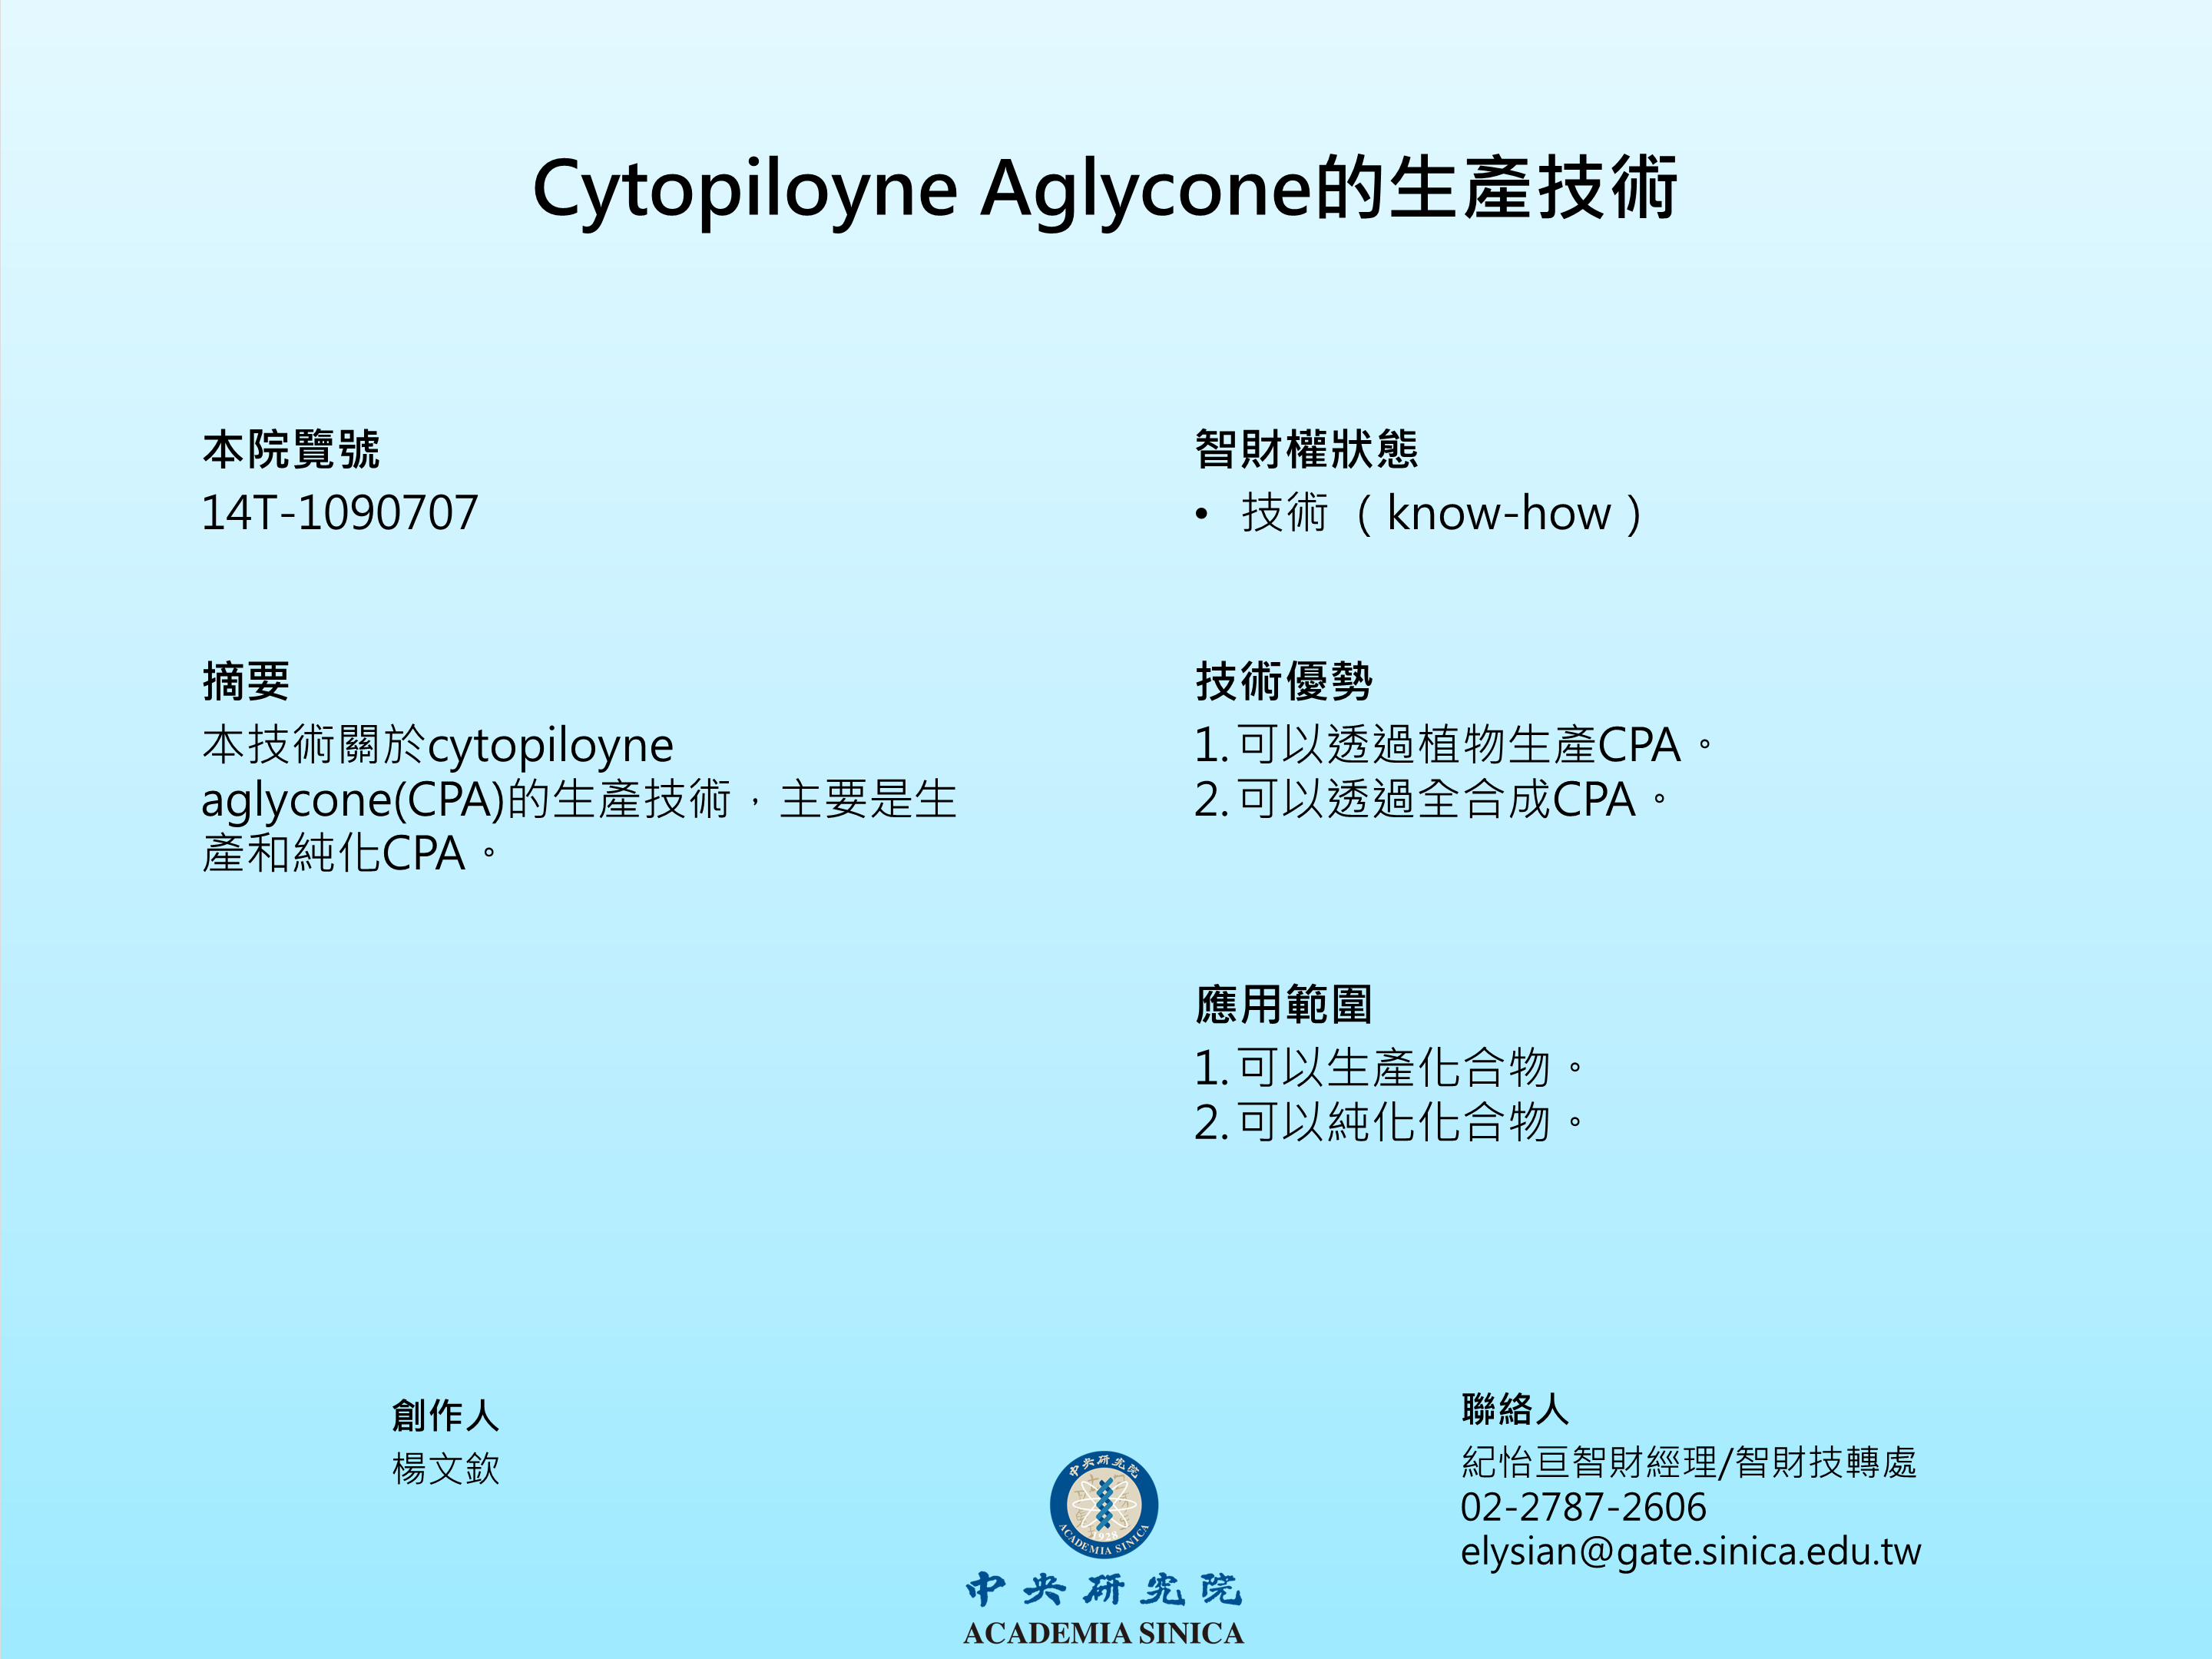 Cytopiloyne Aglycone的生產技術